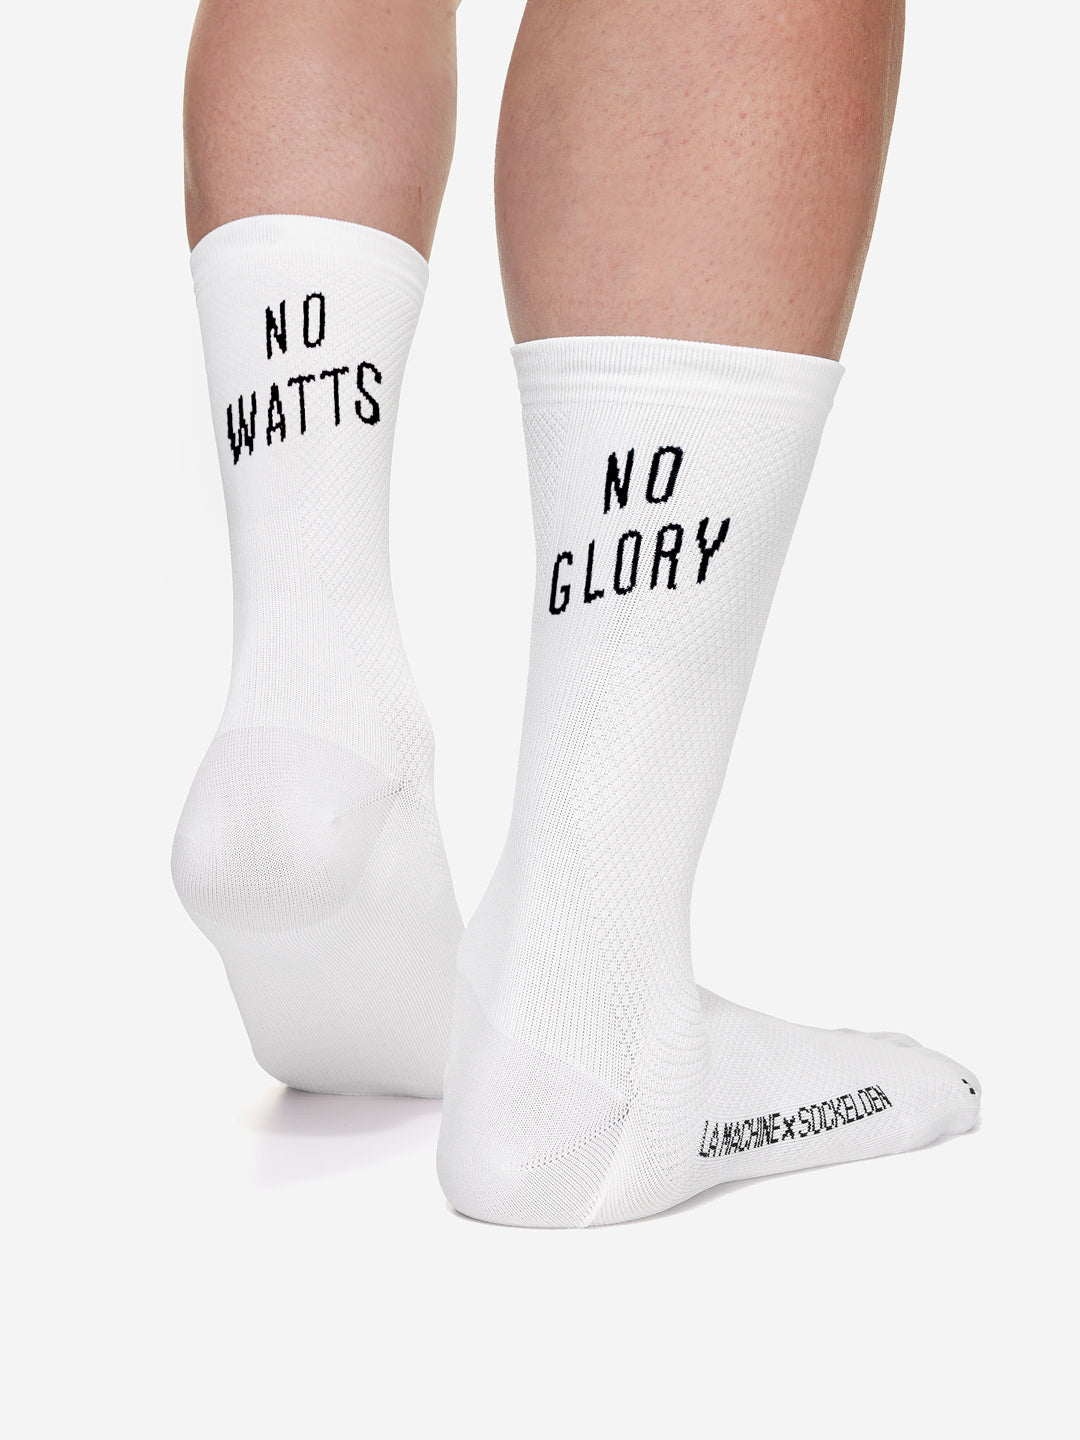 No Watts No Glory - Fahrradsocken - Weiß